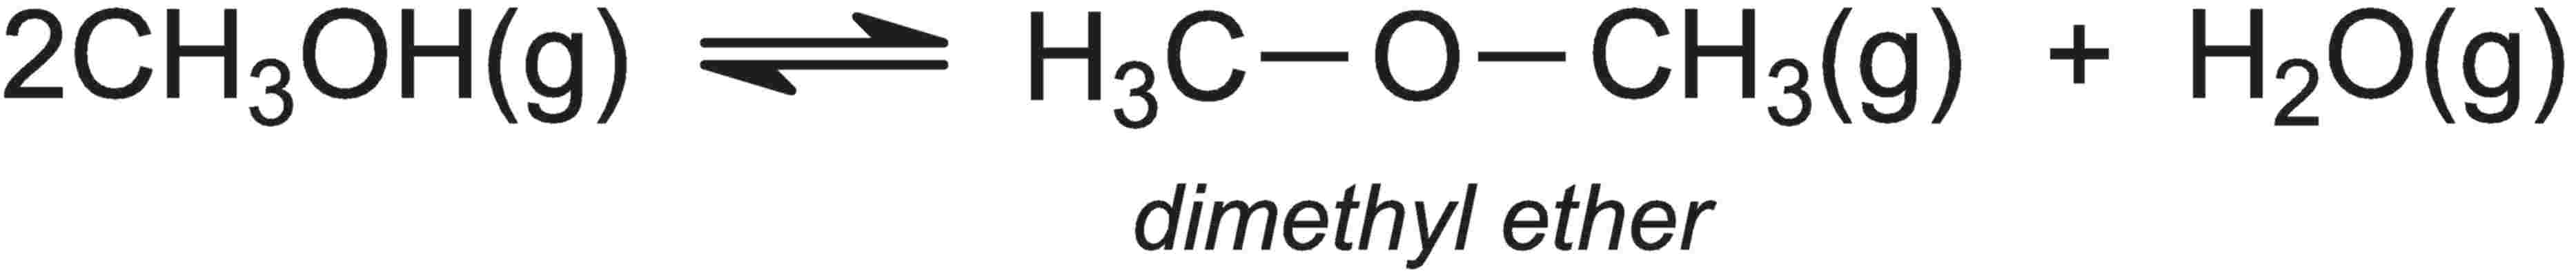 Метан диметиловый эфир. Диметиловый эфир из метанола.